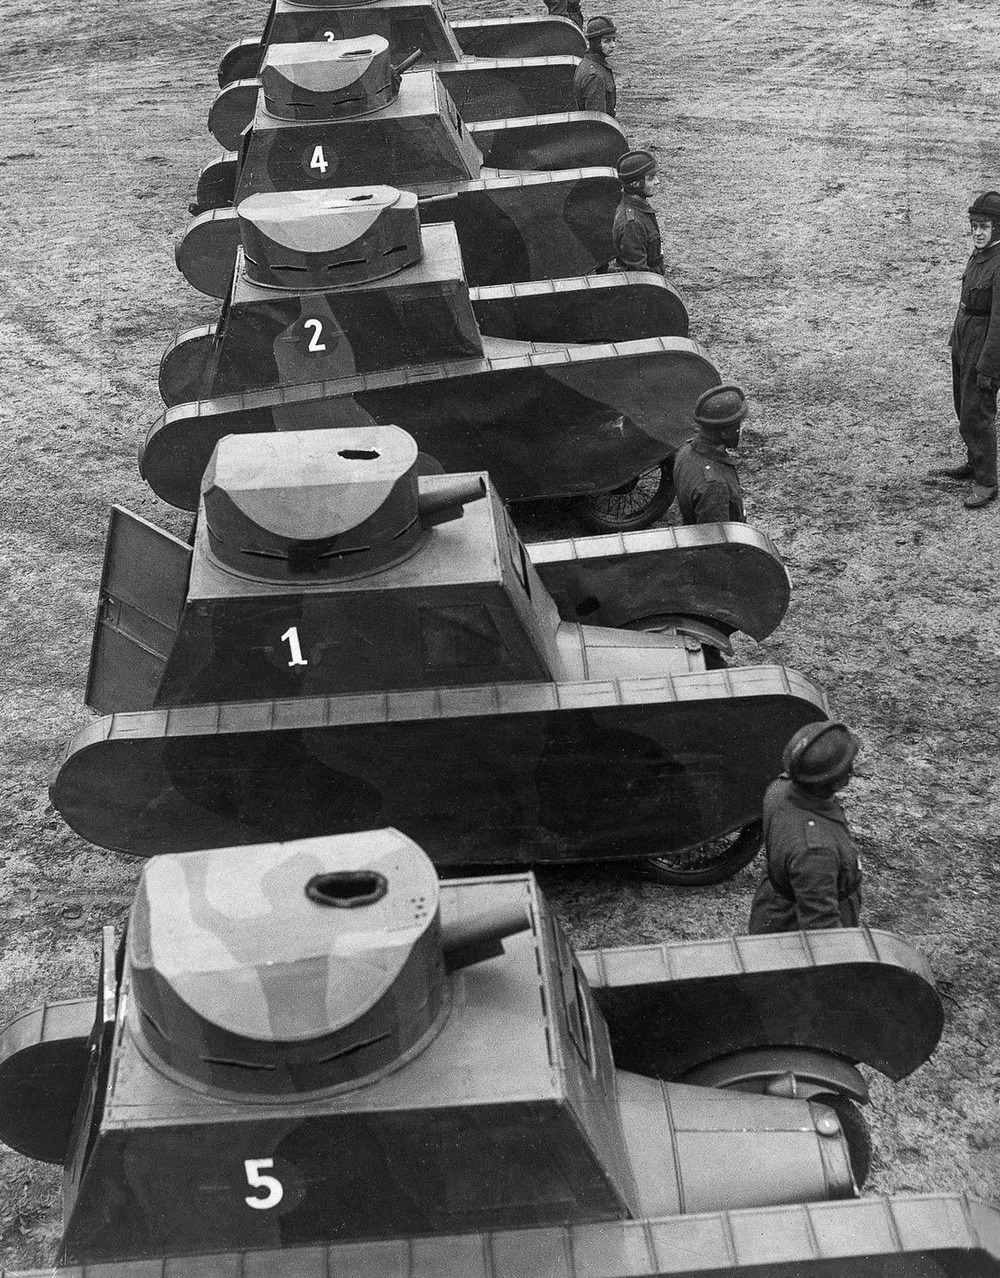 Резиновые танки: как хитрили на войне с не очень тяжёлой техникой. Фотографии 1918-1954 годов 8